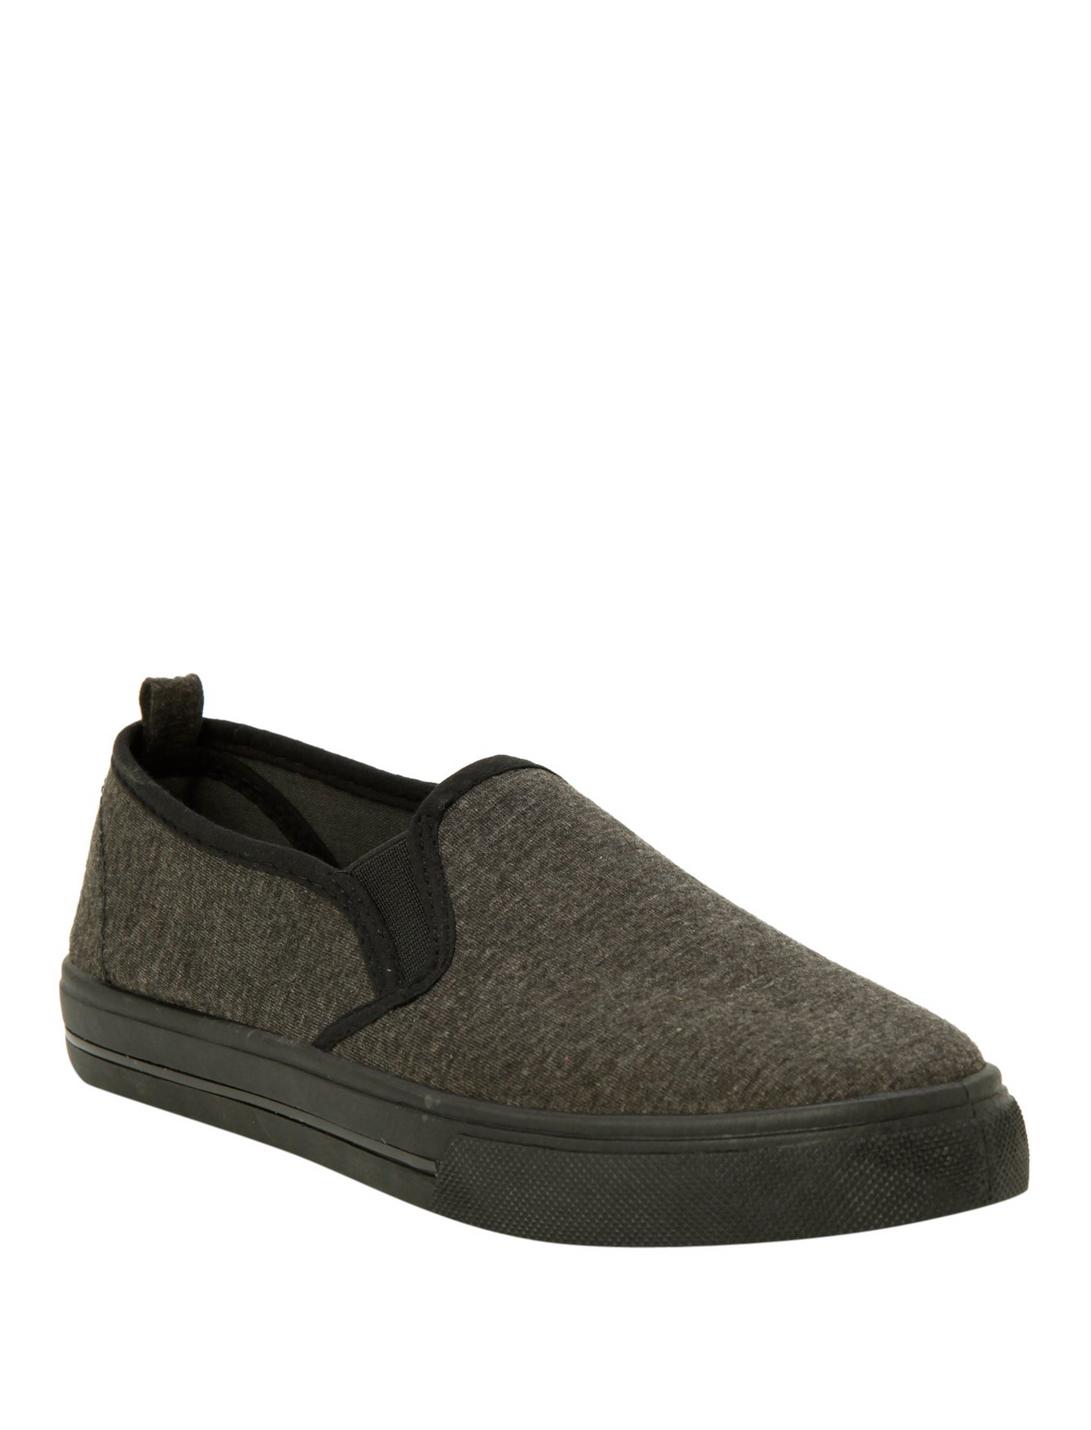 Grey Slip-On Shoes, BLACK, hi-res